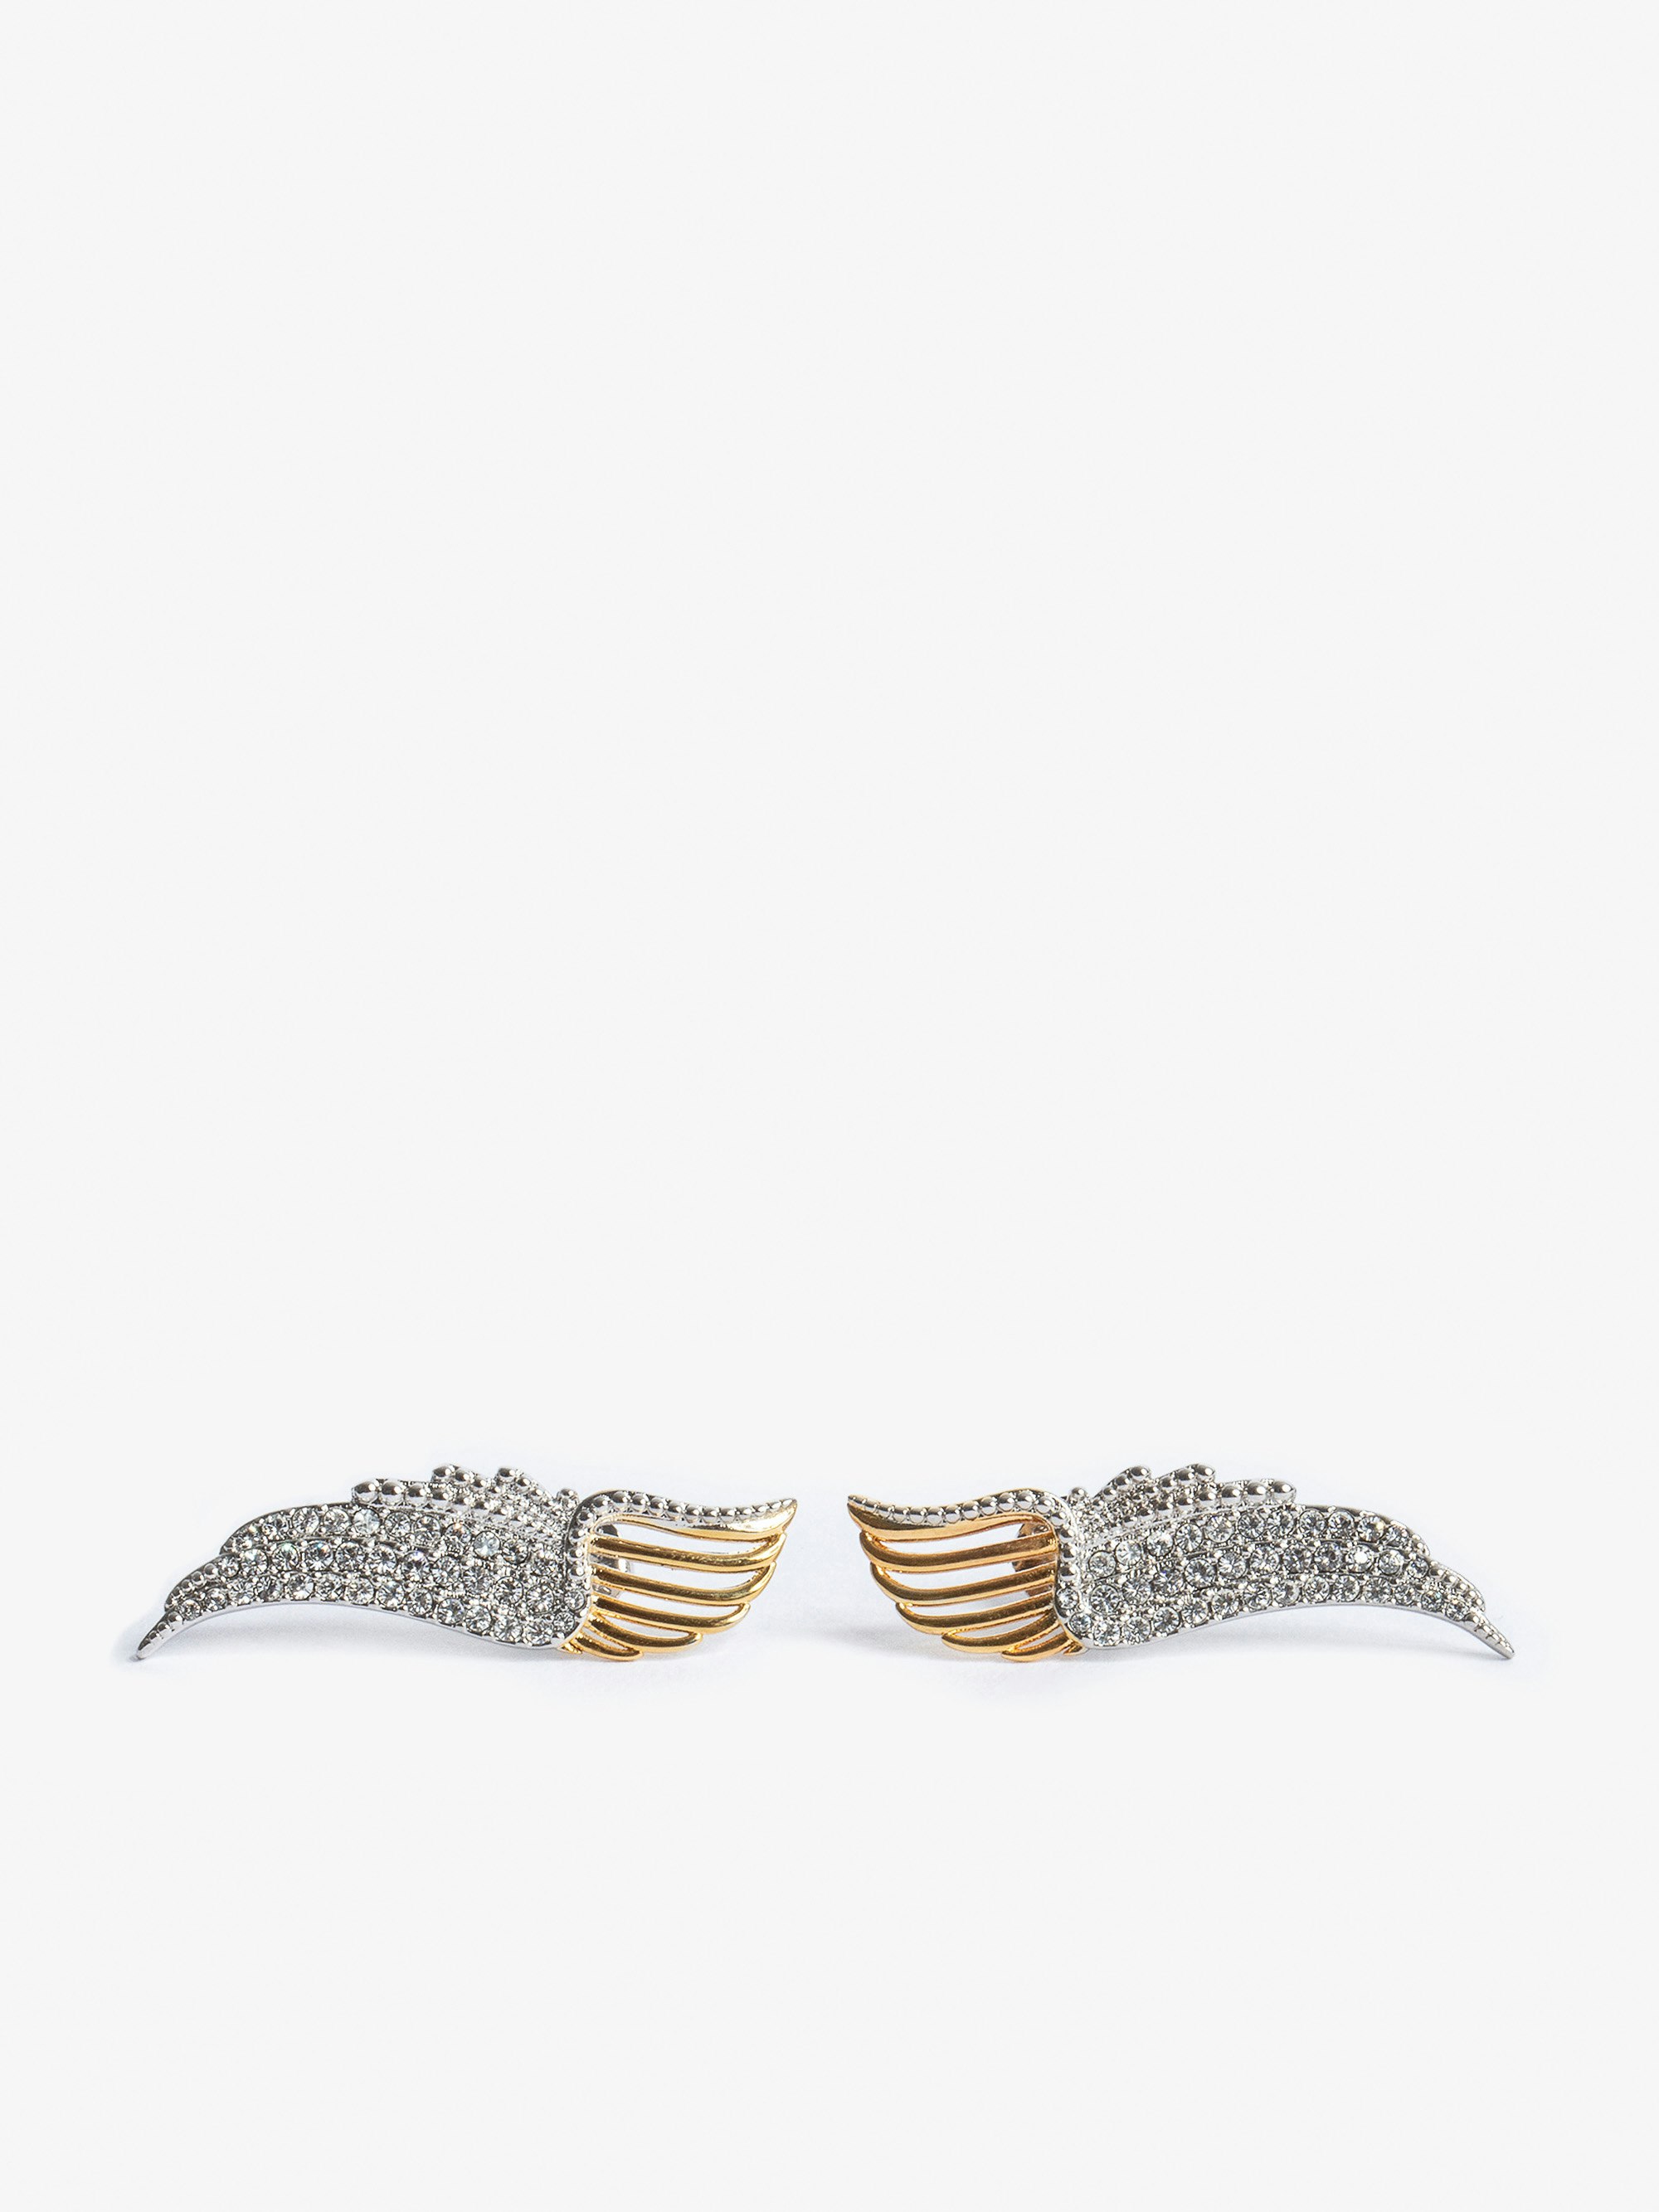 Rock Over Earrings - Crystal-embellished gold-tone metal wings earrings.